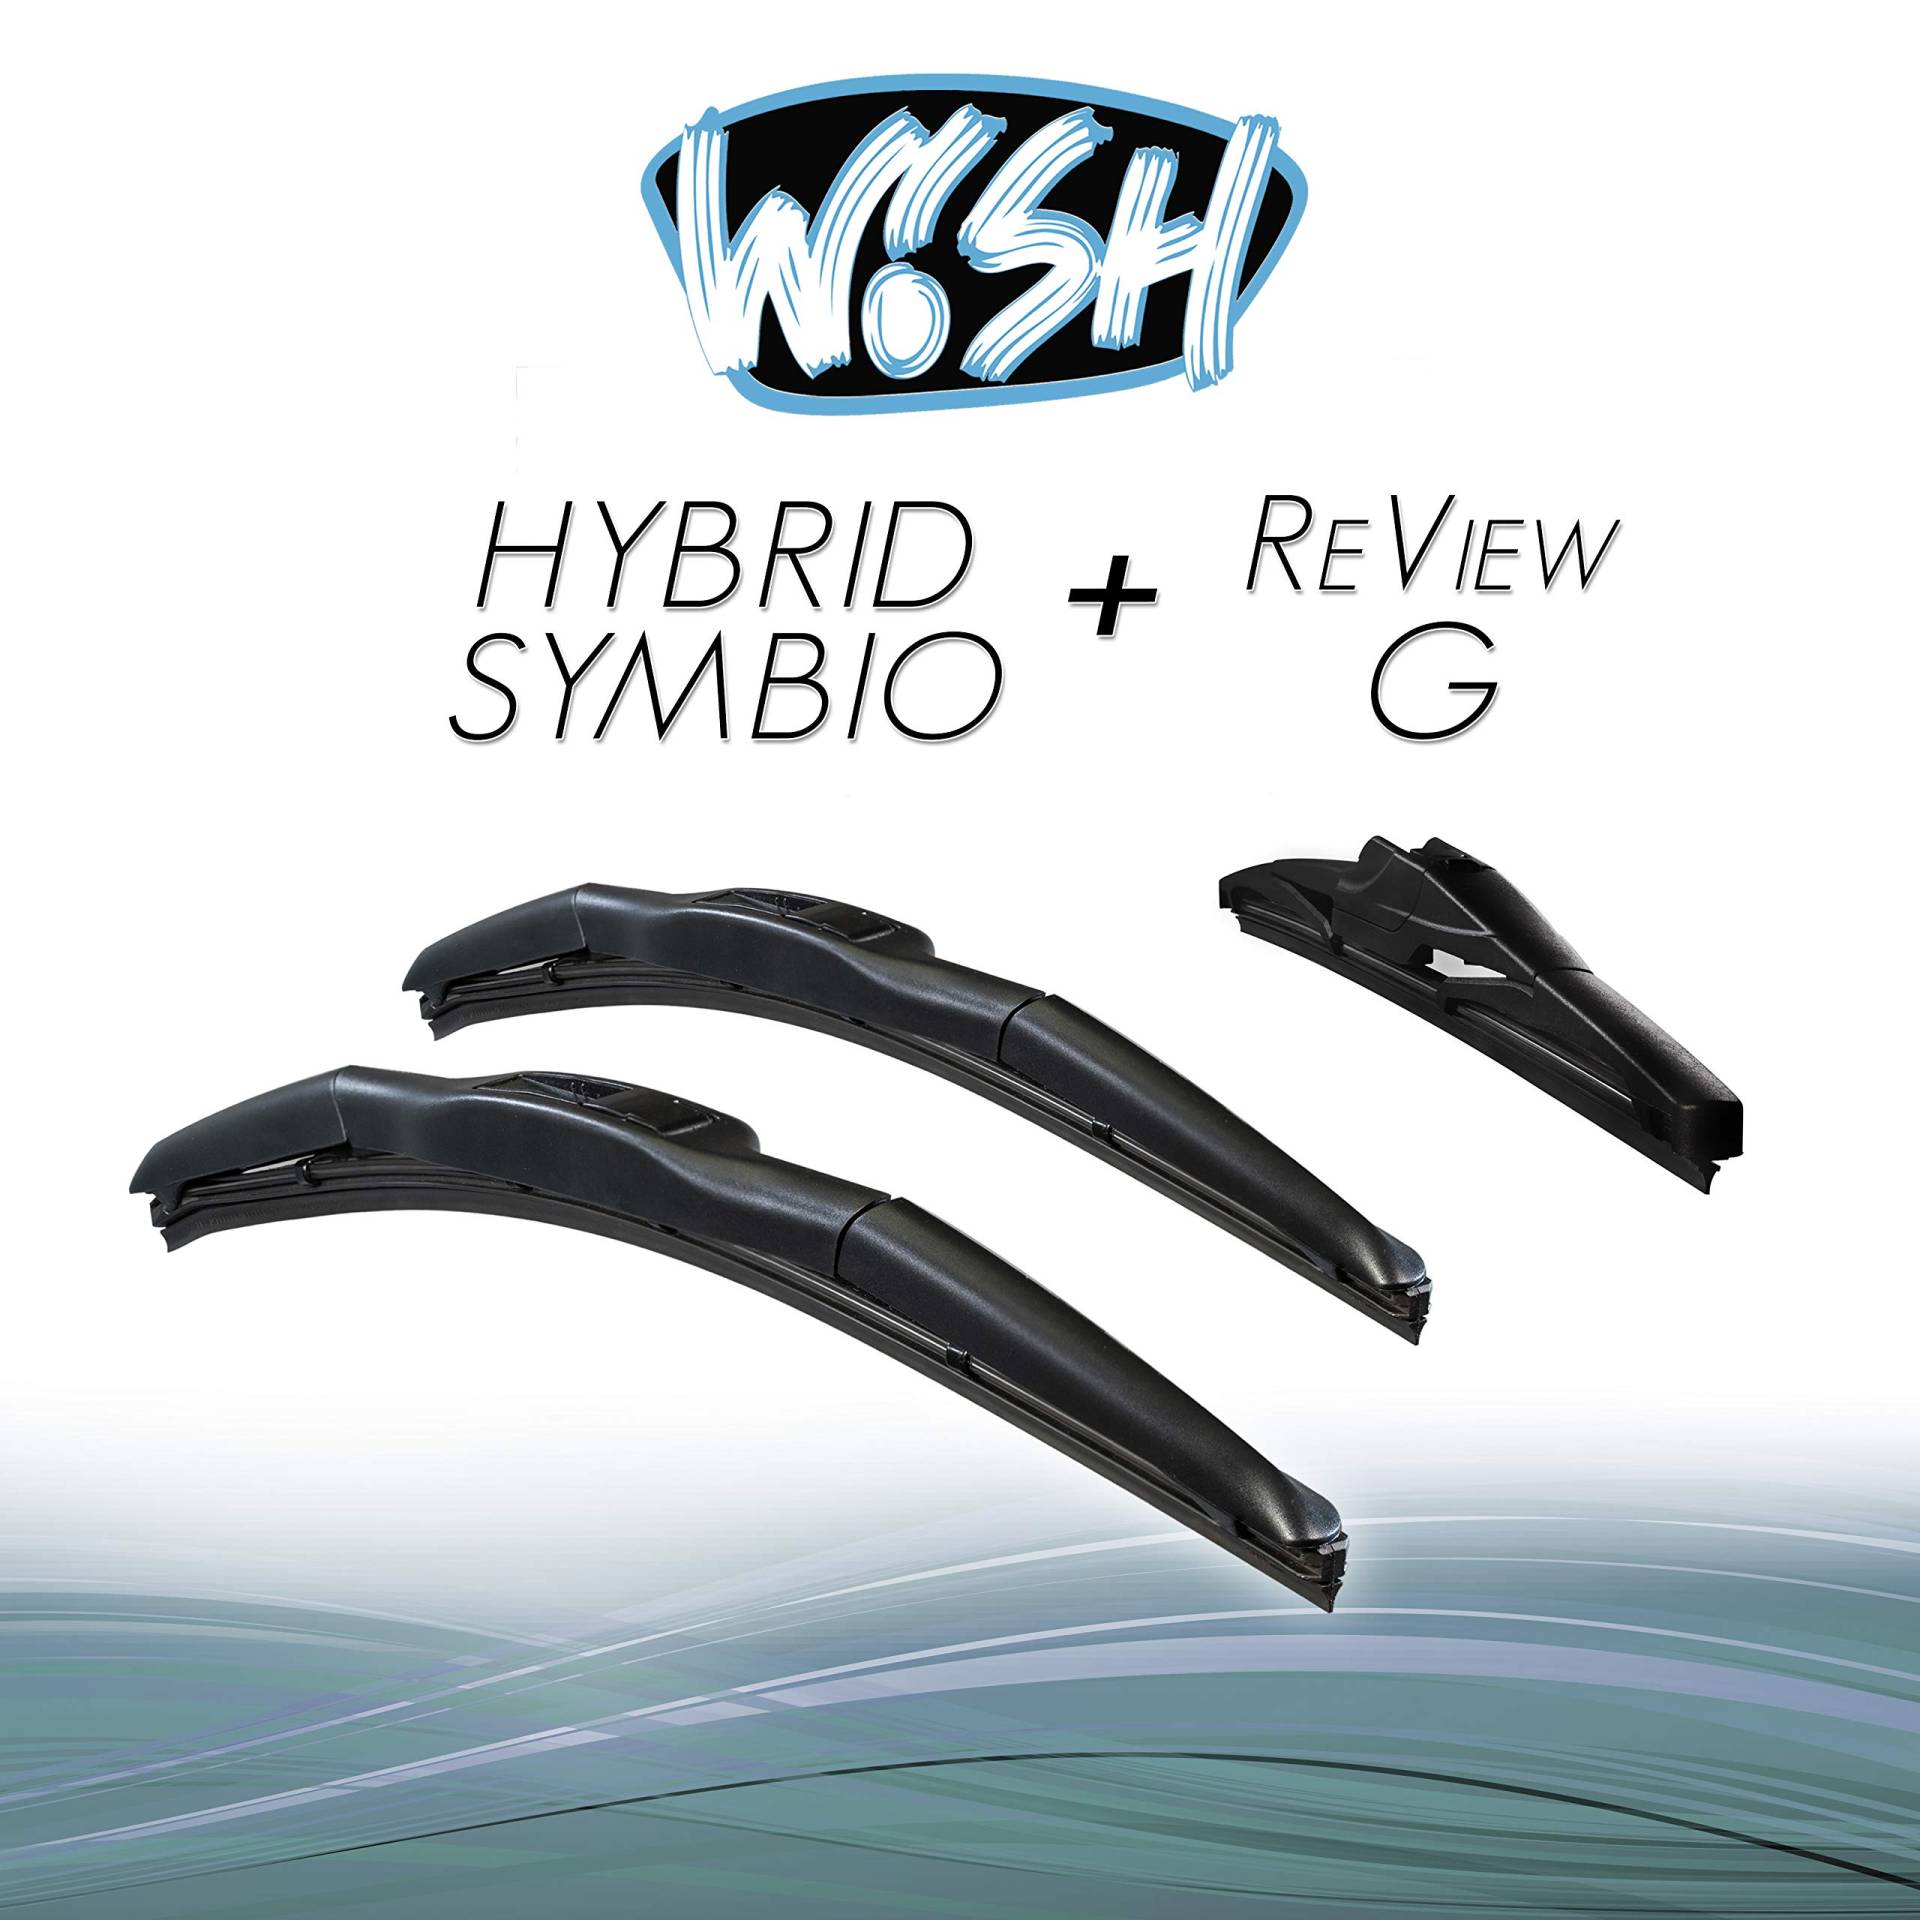 Wish® Hybrid Symbio Satz Front + Heck Scheibenwischer Länge: 24" 600mm / 14" 350mm / 9" 230mm Wischblätter Vorne und Hinten Hybrid-Scheibenwischer + Review G HS24.14.9RG von Wish